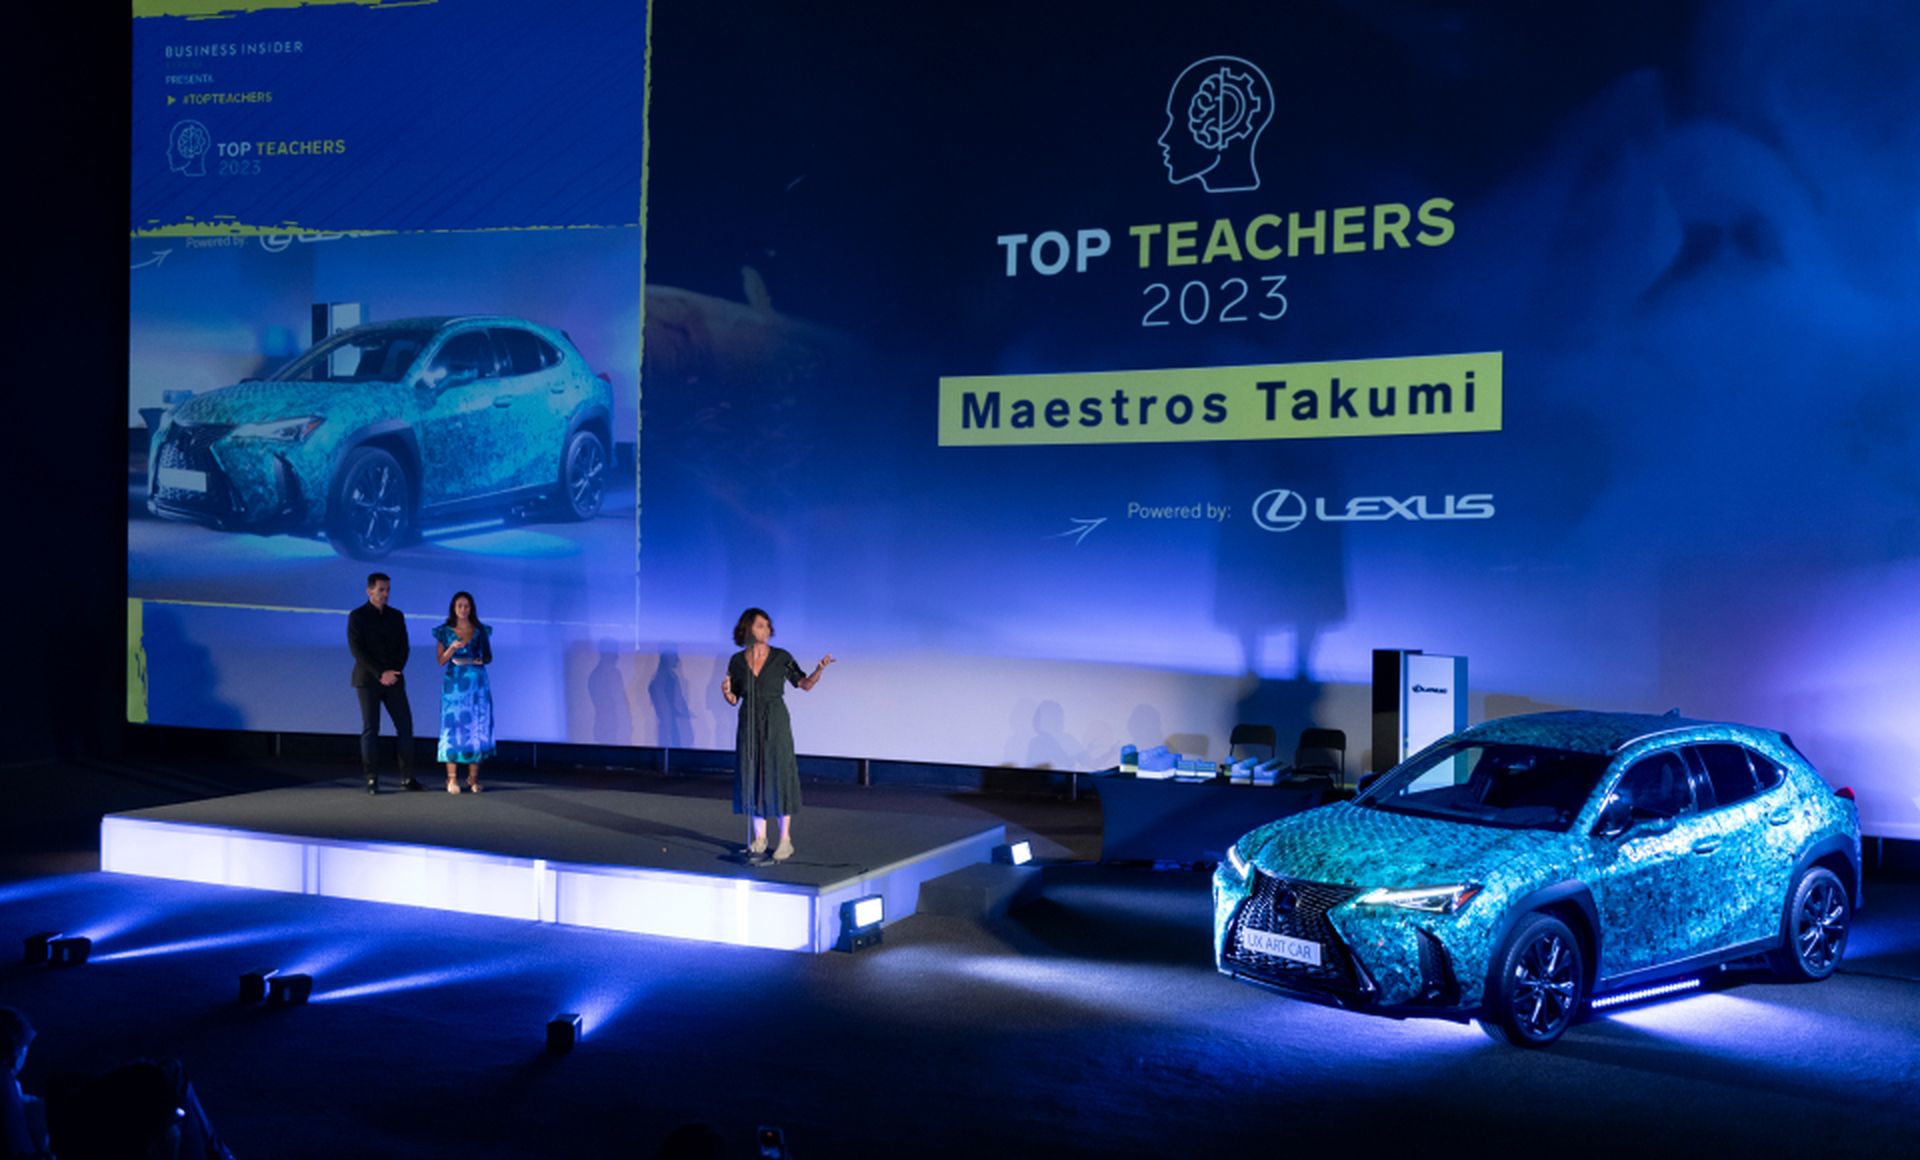 El vehículo Art Car "Gyorin Kozane" de Lexus, compuesto de escamas azules, vestía el auditorio de los Top Teachers 2023.